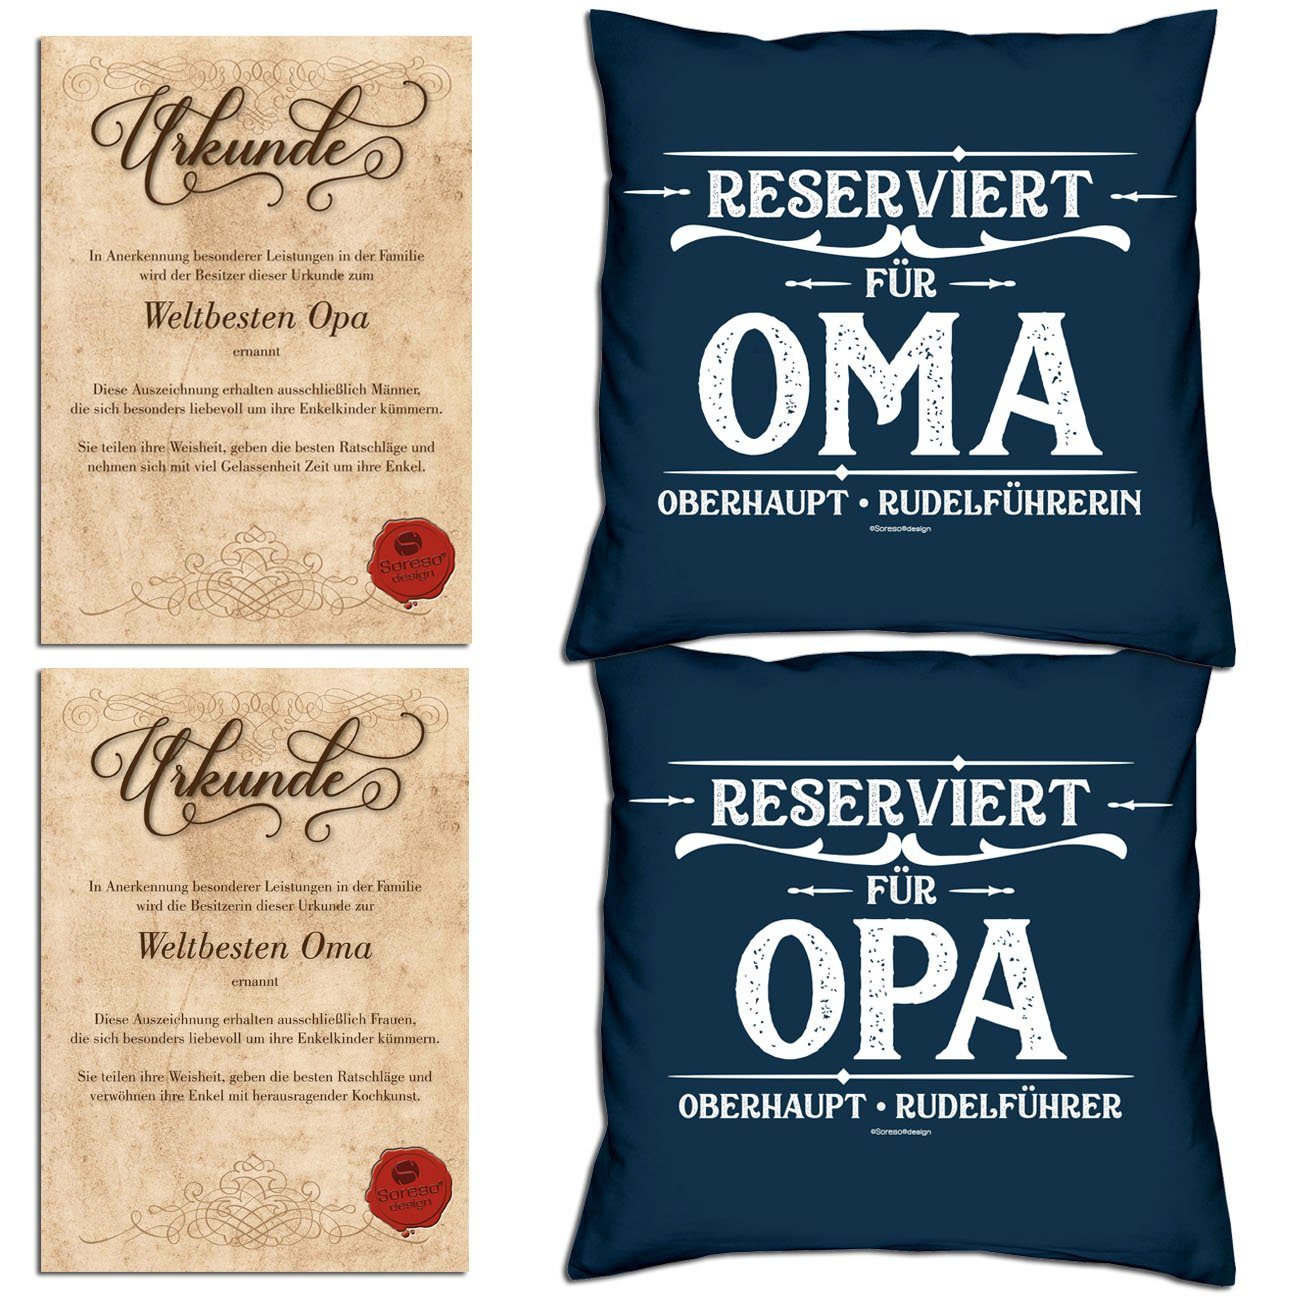 Soreso® Dekokissen Kissen-Set Reserviert für Opa Reserviert für Oma mit Urkunden, Vatertagsgeschenk Muttertagsgeschenk im Geschenk-Set navy-blau